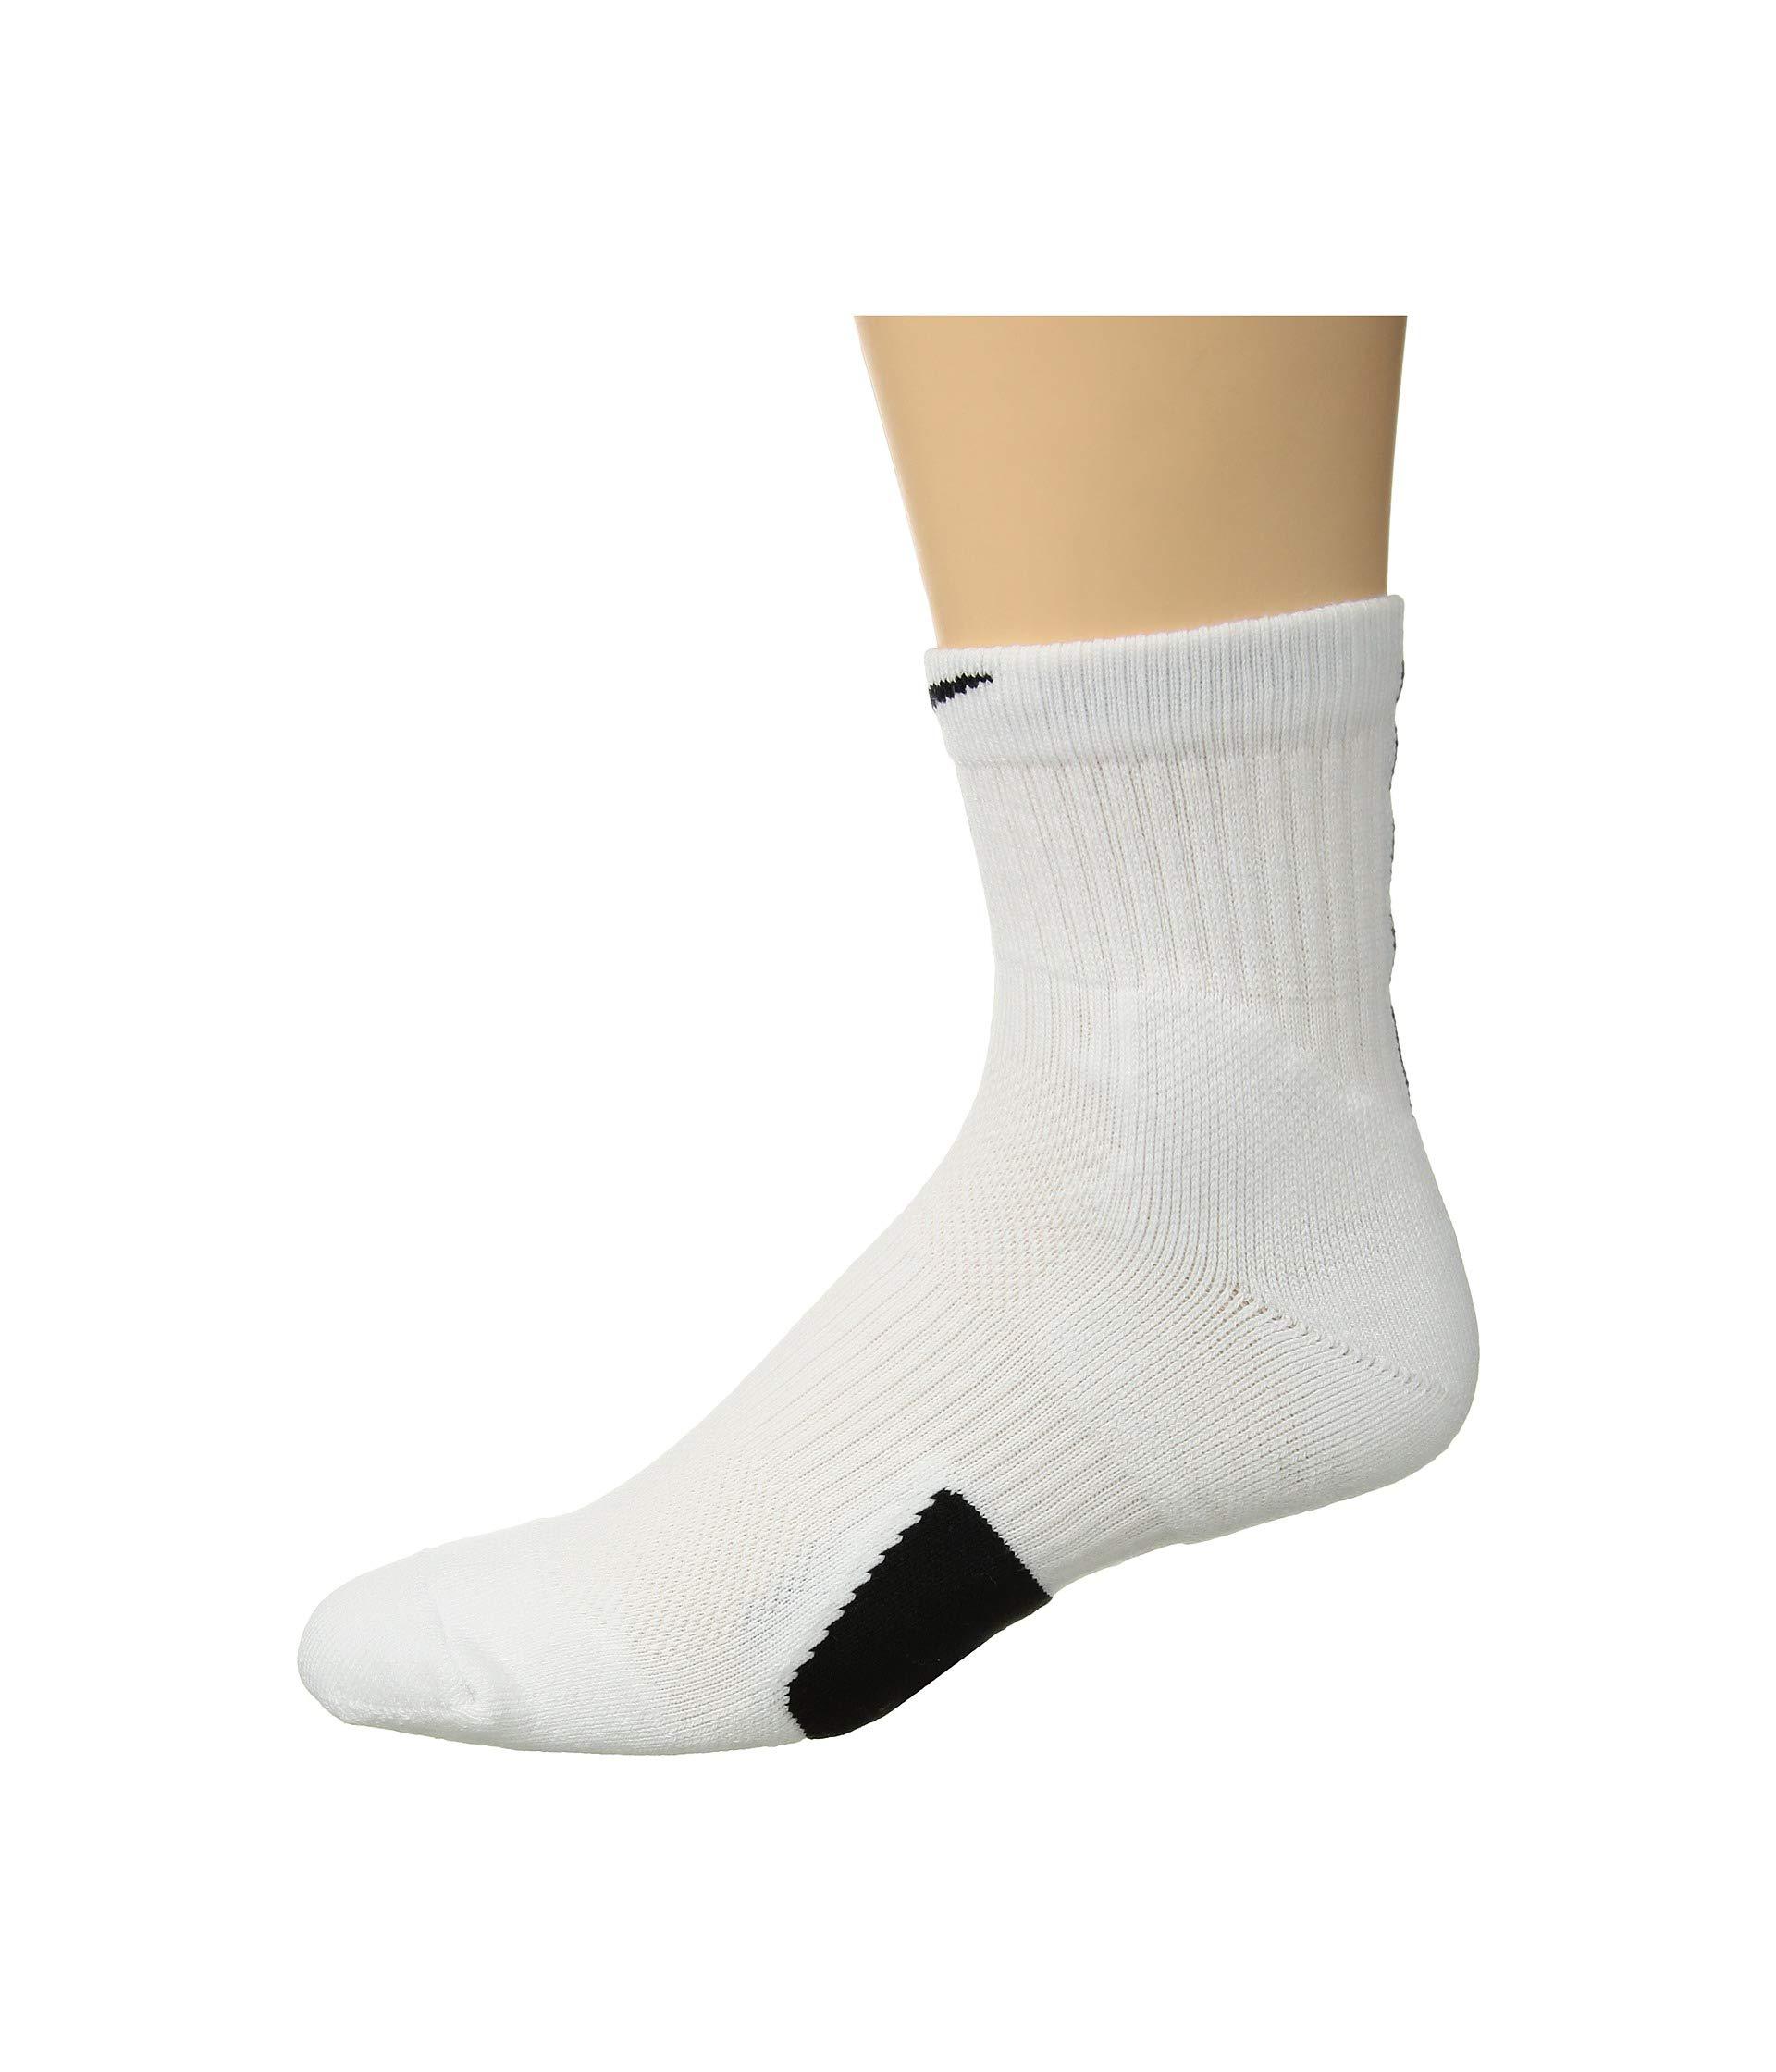 elite mid socks